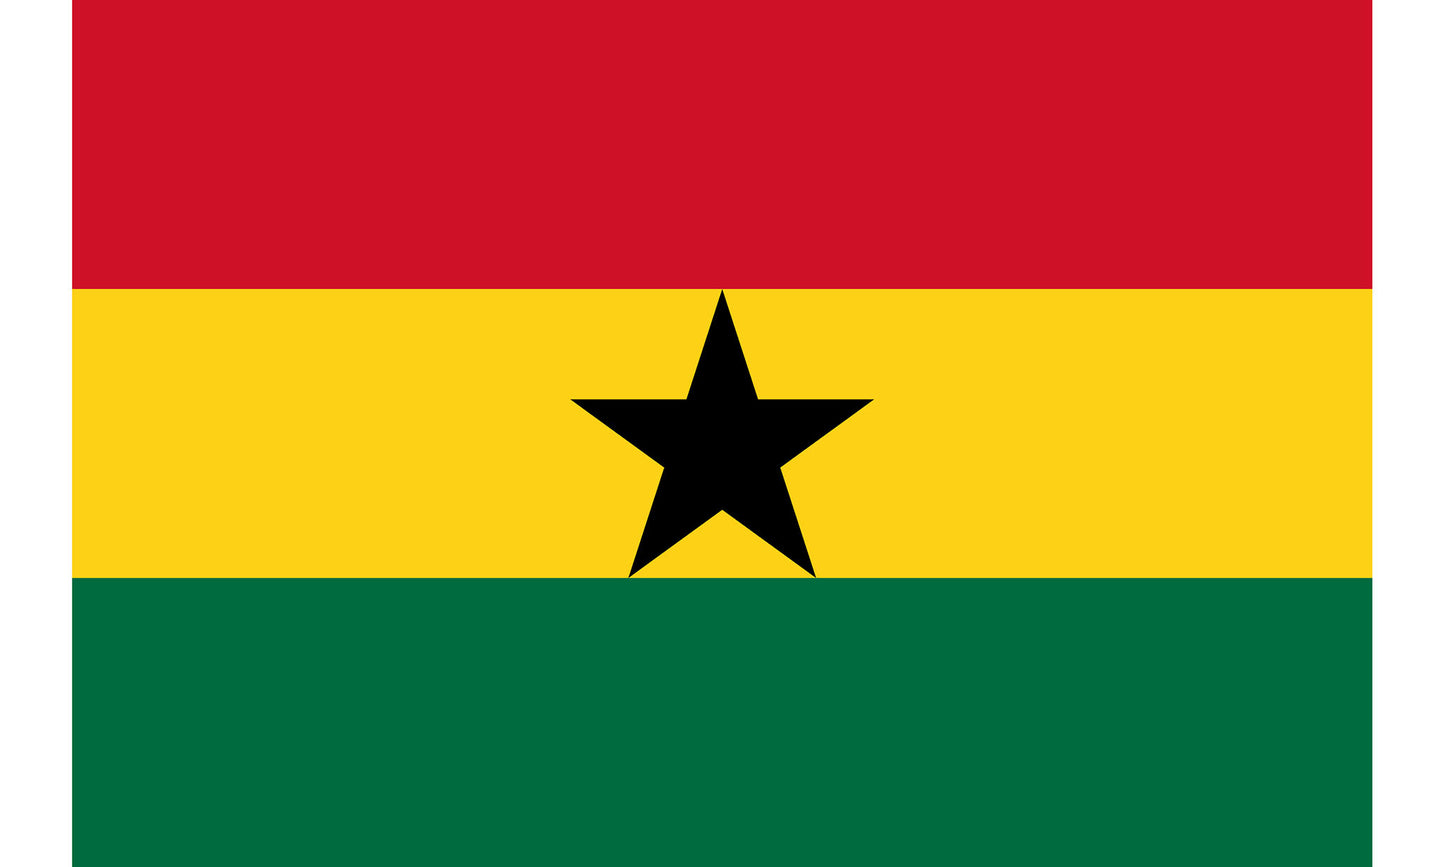 INR-GHA-15x22-2 - государственный флаг Ганы, размер: 15х22 см, материал: атлас. Печать с двух сторон. Подставка и шток приобретаются отдельно